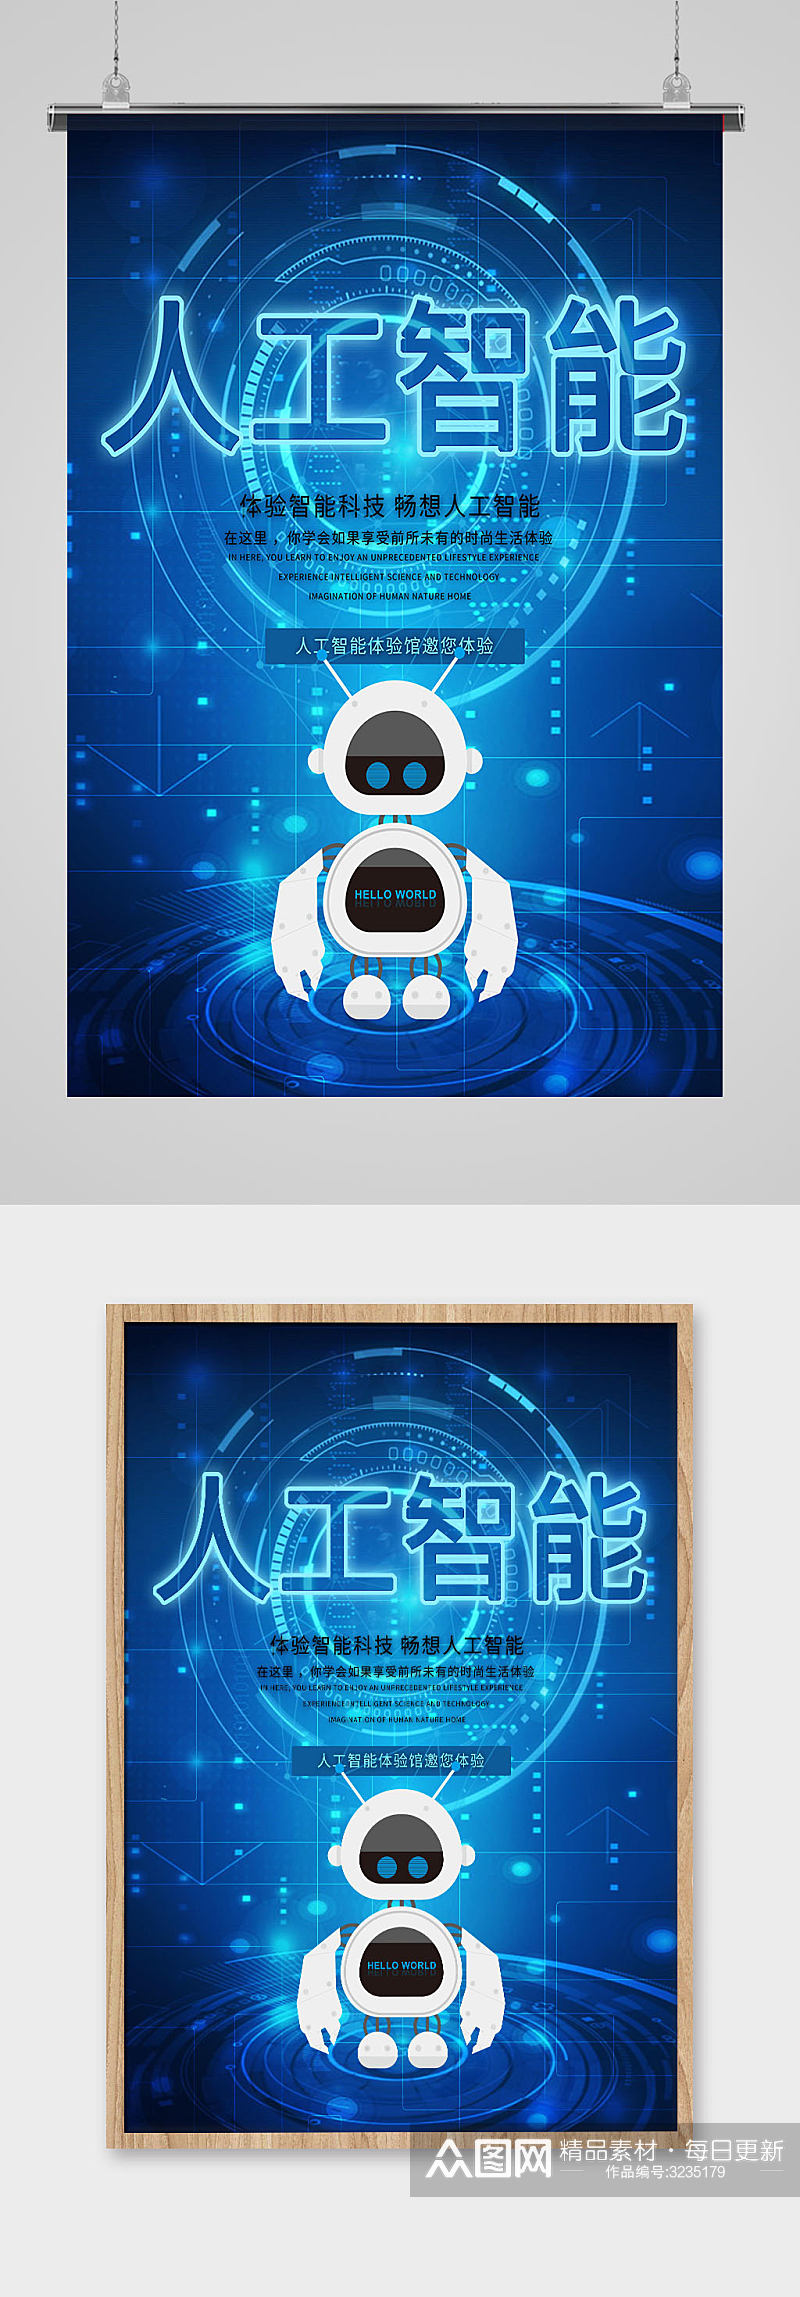 人工智能科技主题海报设计模板素材